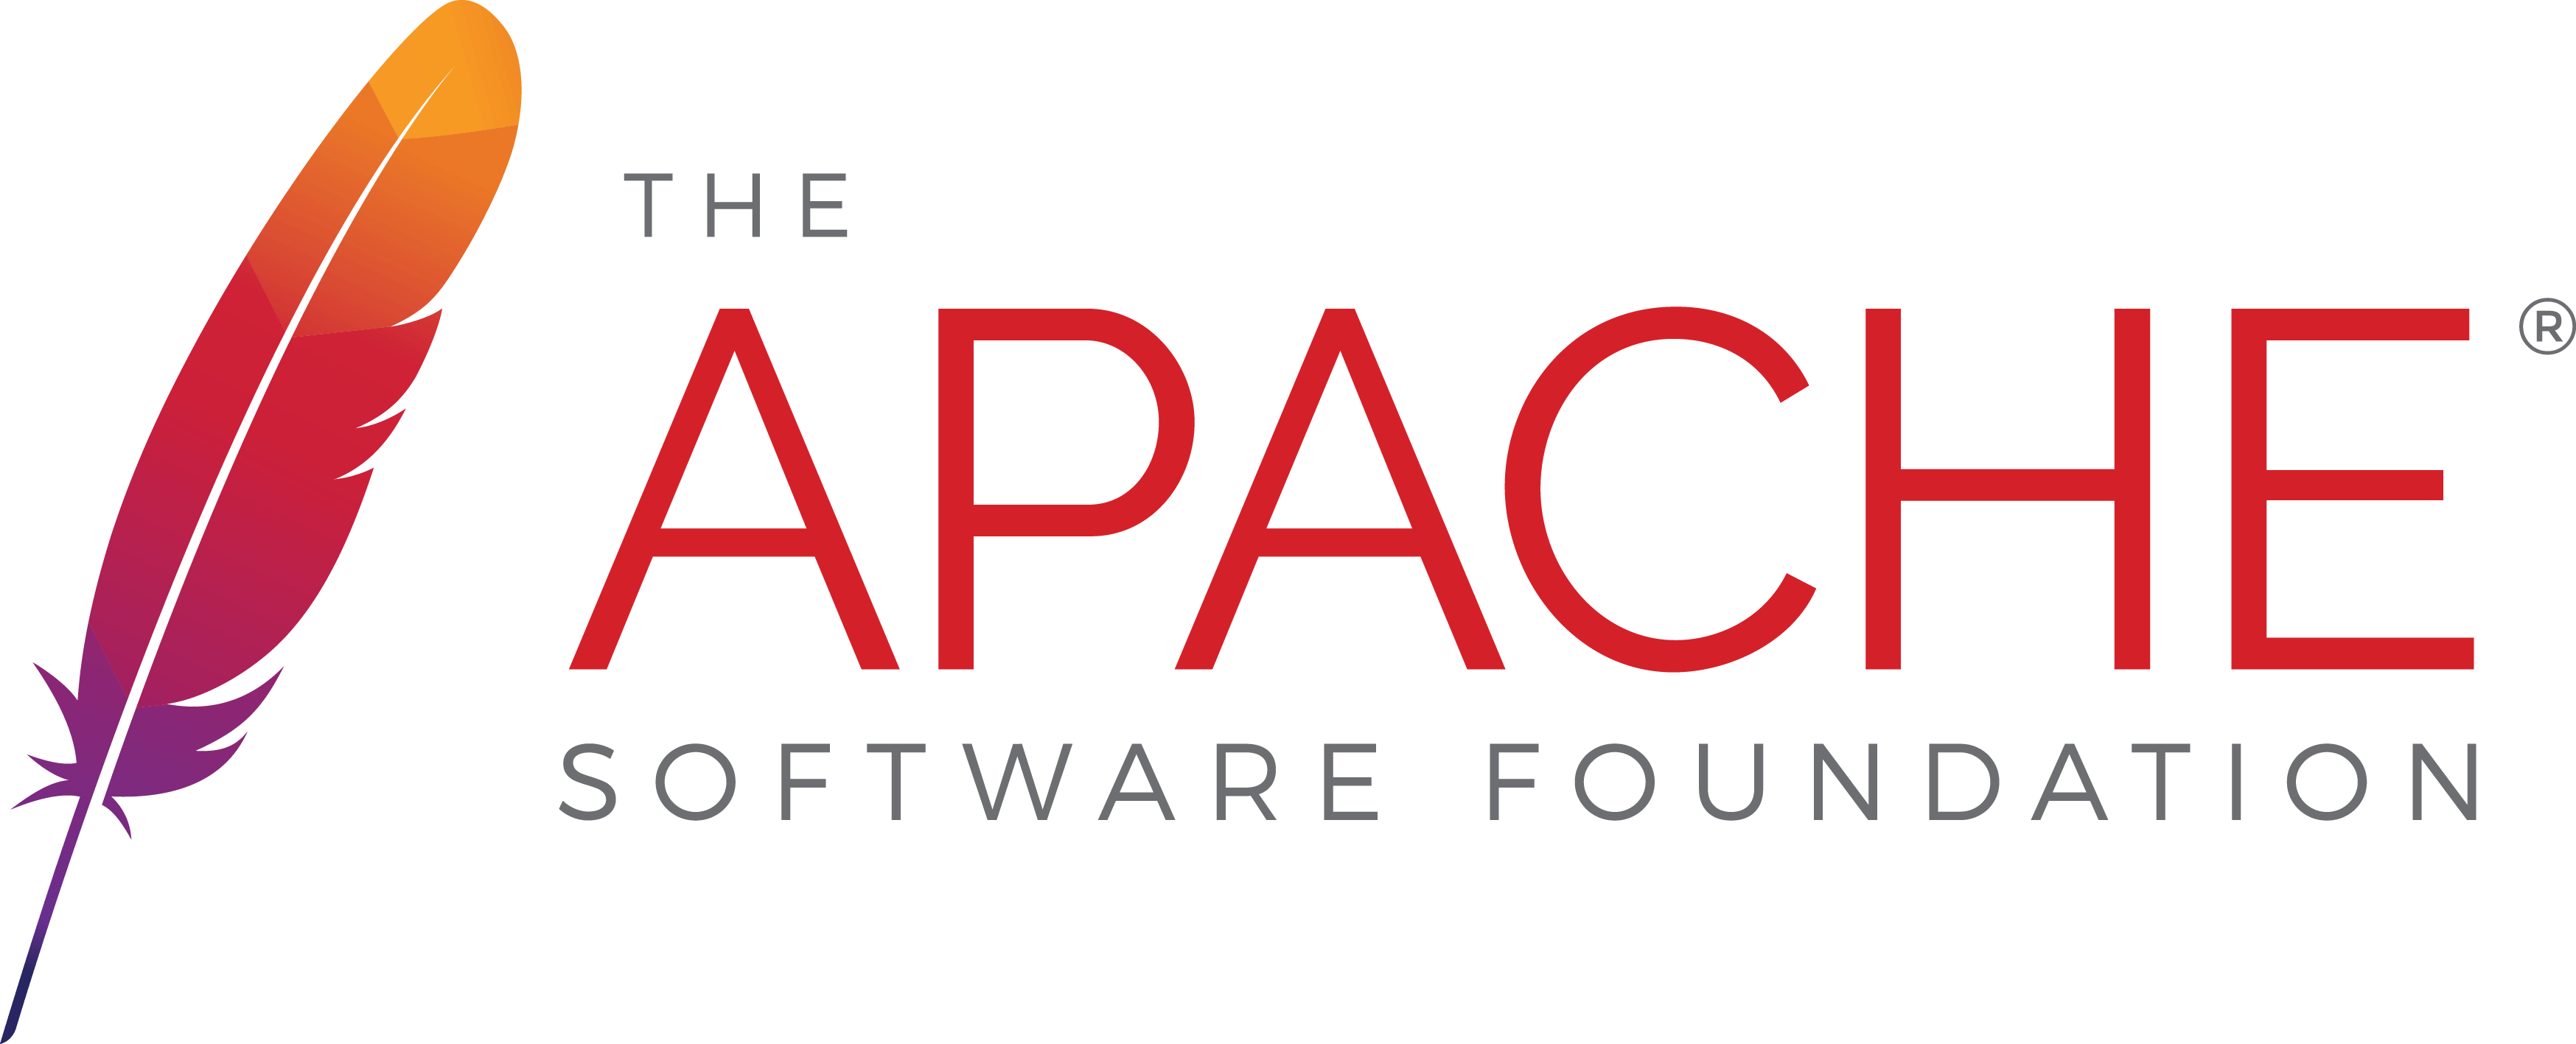 Red Server Logo - Apache Software Foundation Graphics